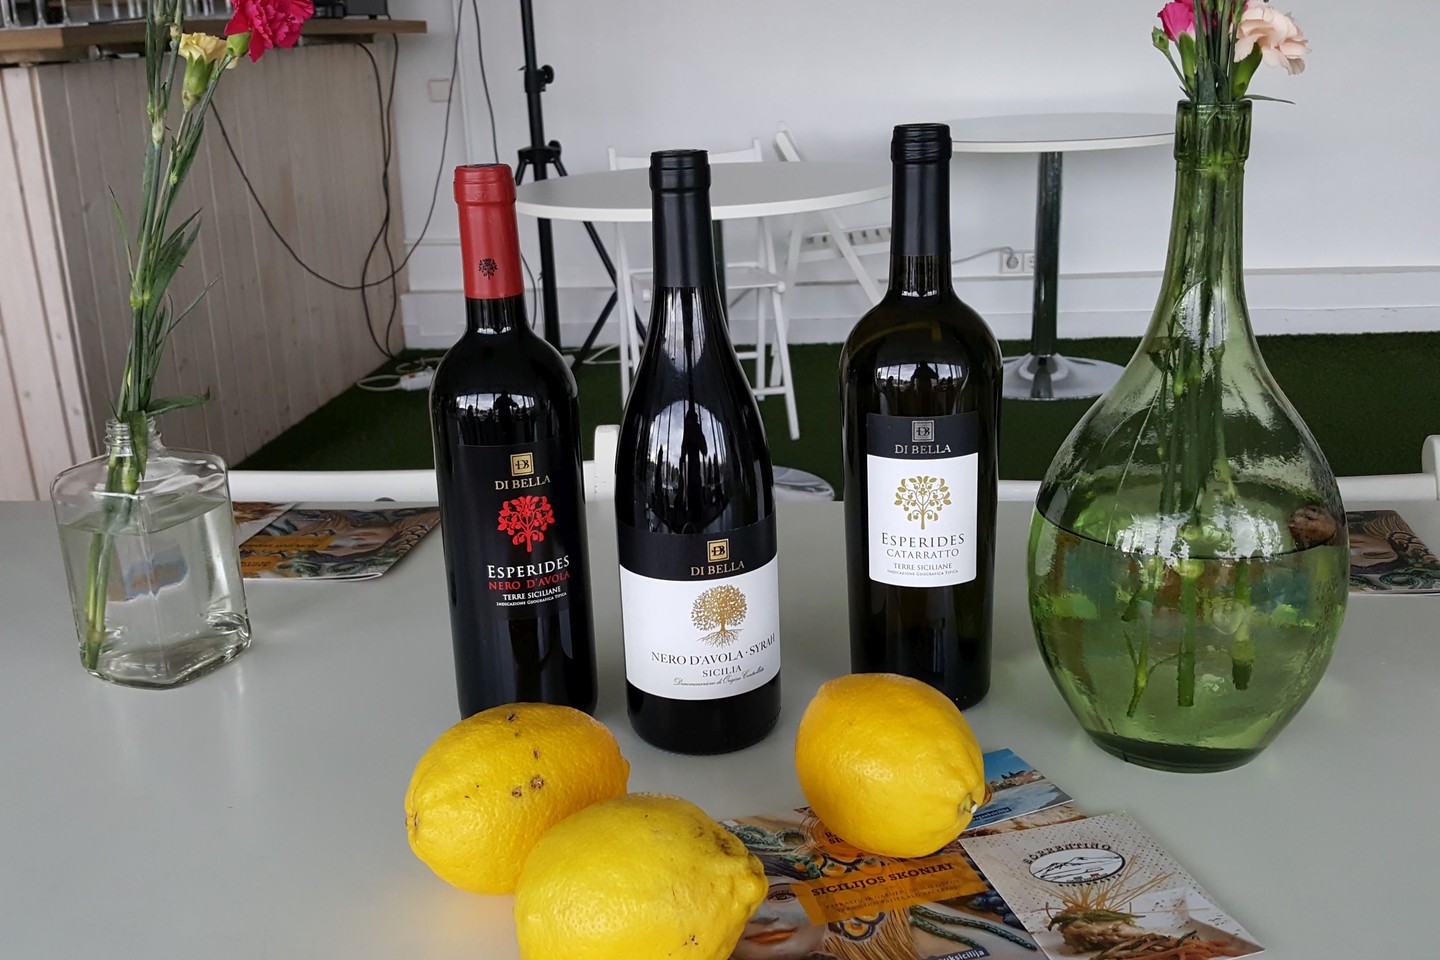   Prie aštuonkojo, kaip ir prie kitų jūros gėrybių, tradiciškai derinamas baltas vynas, bet puikiai dera ir raudonas.<br> D.Milašiūtės nuotr. 